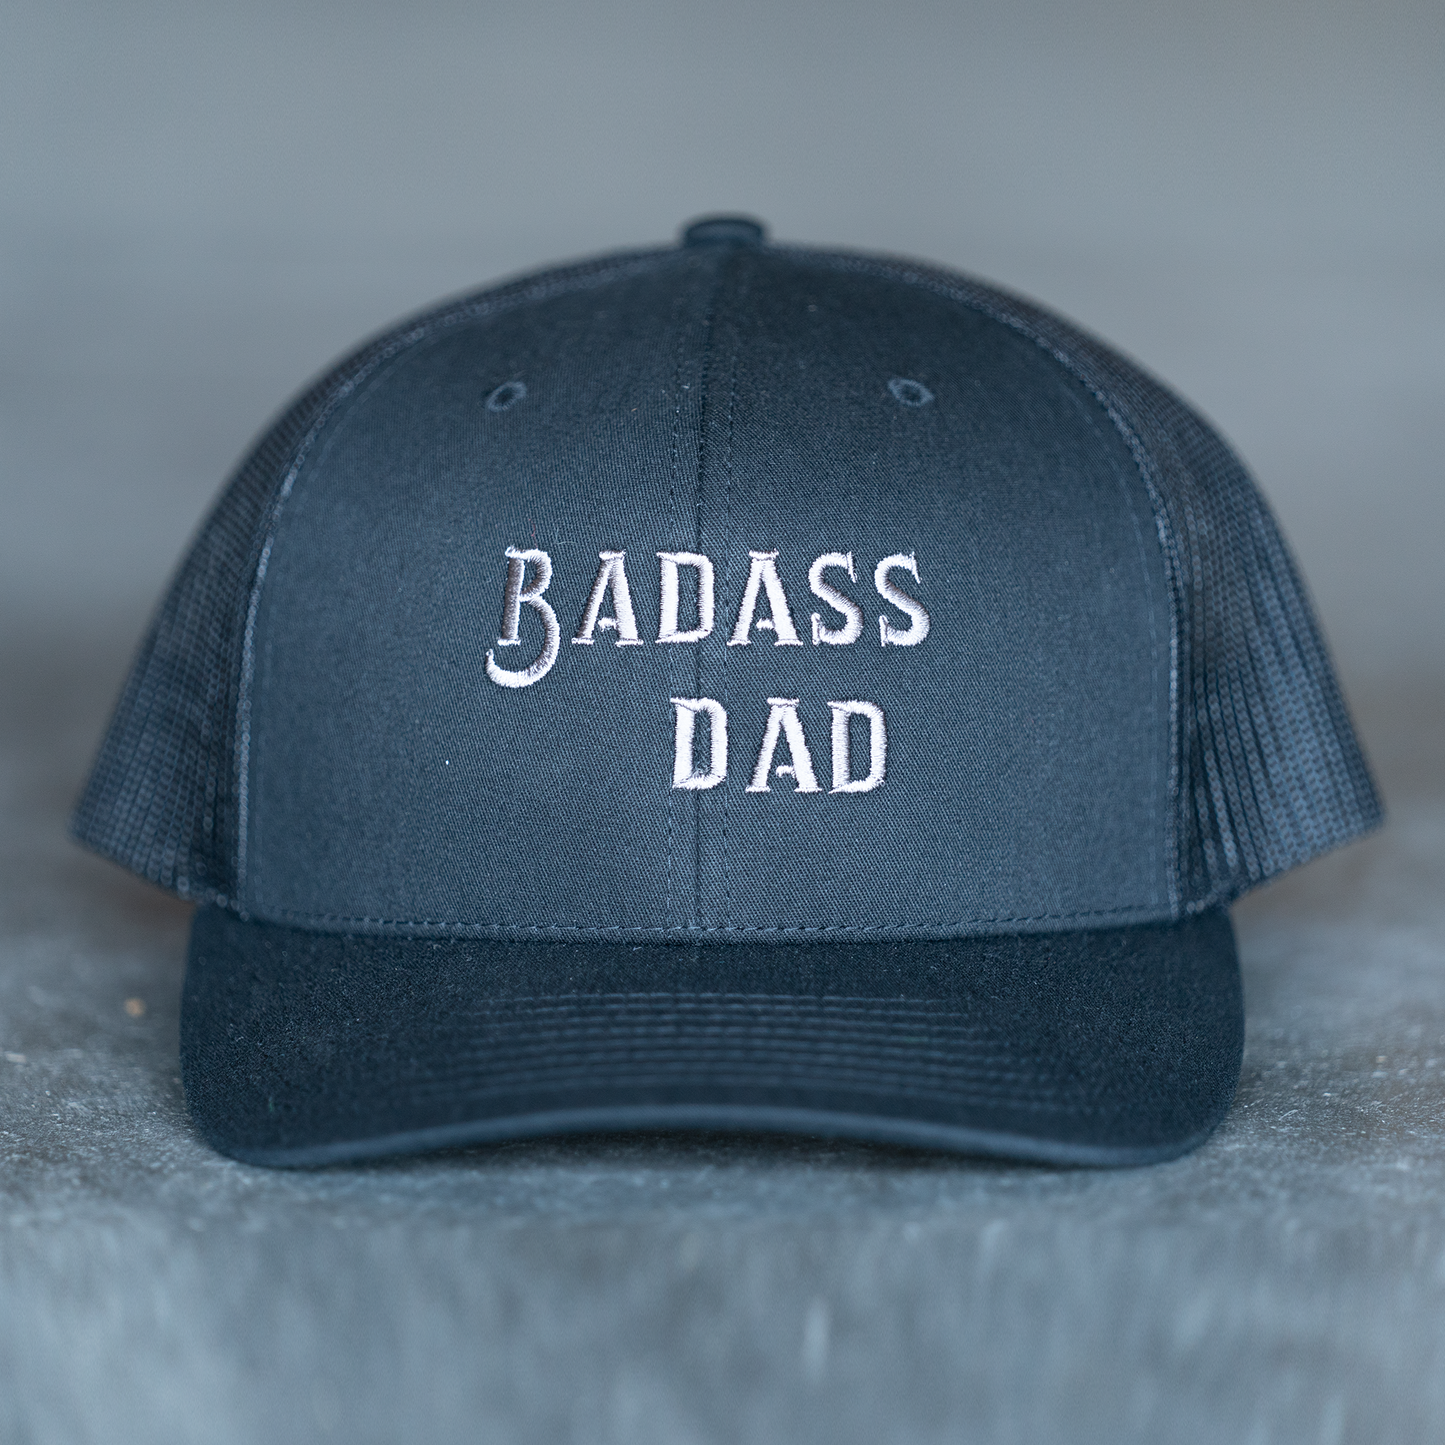 Badass Dad (Gray) - Trucker Hat (Black)